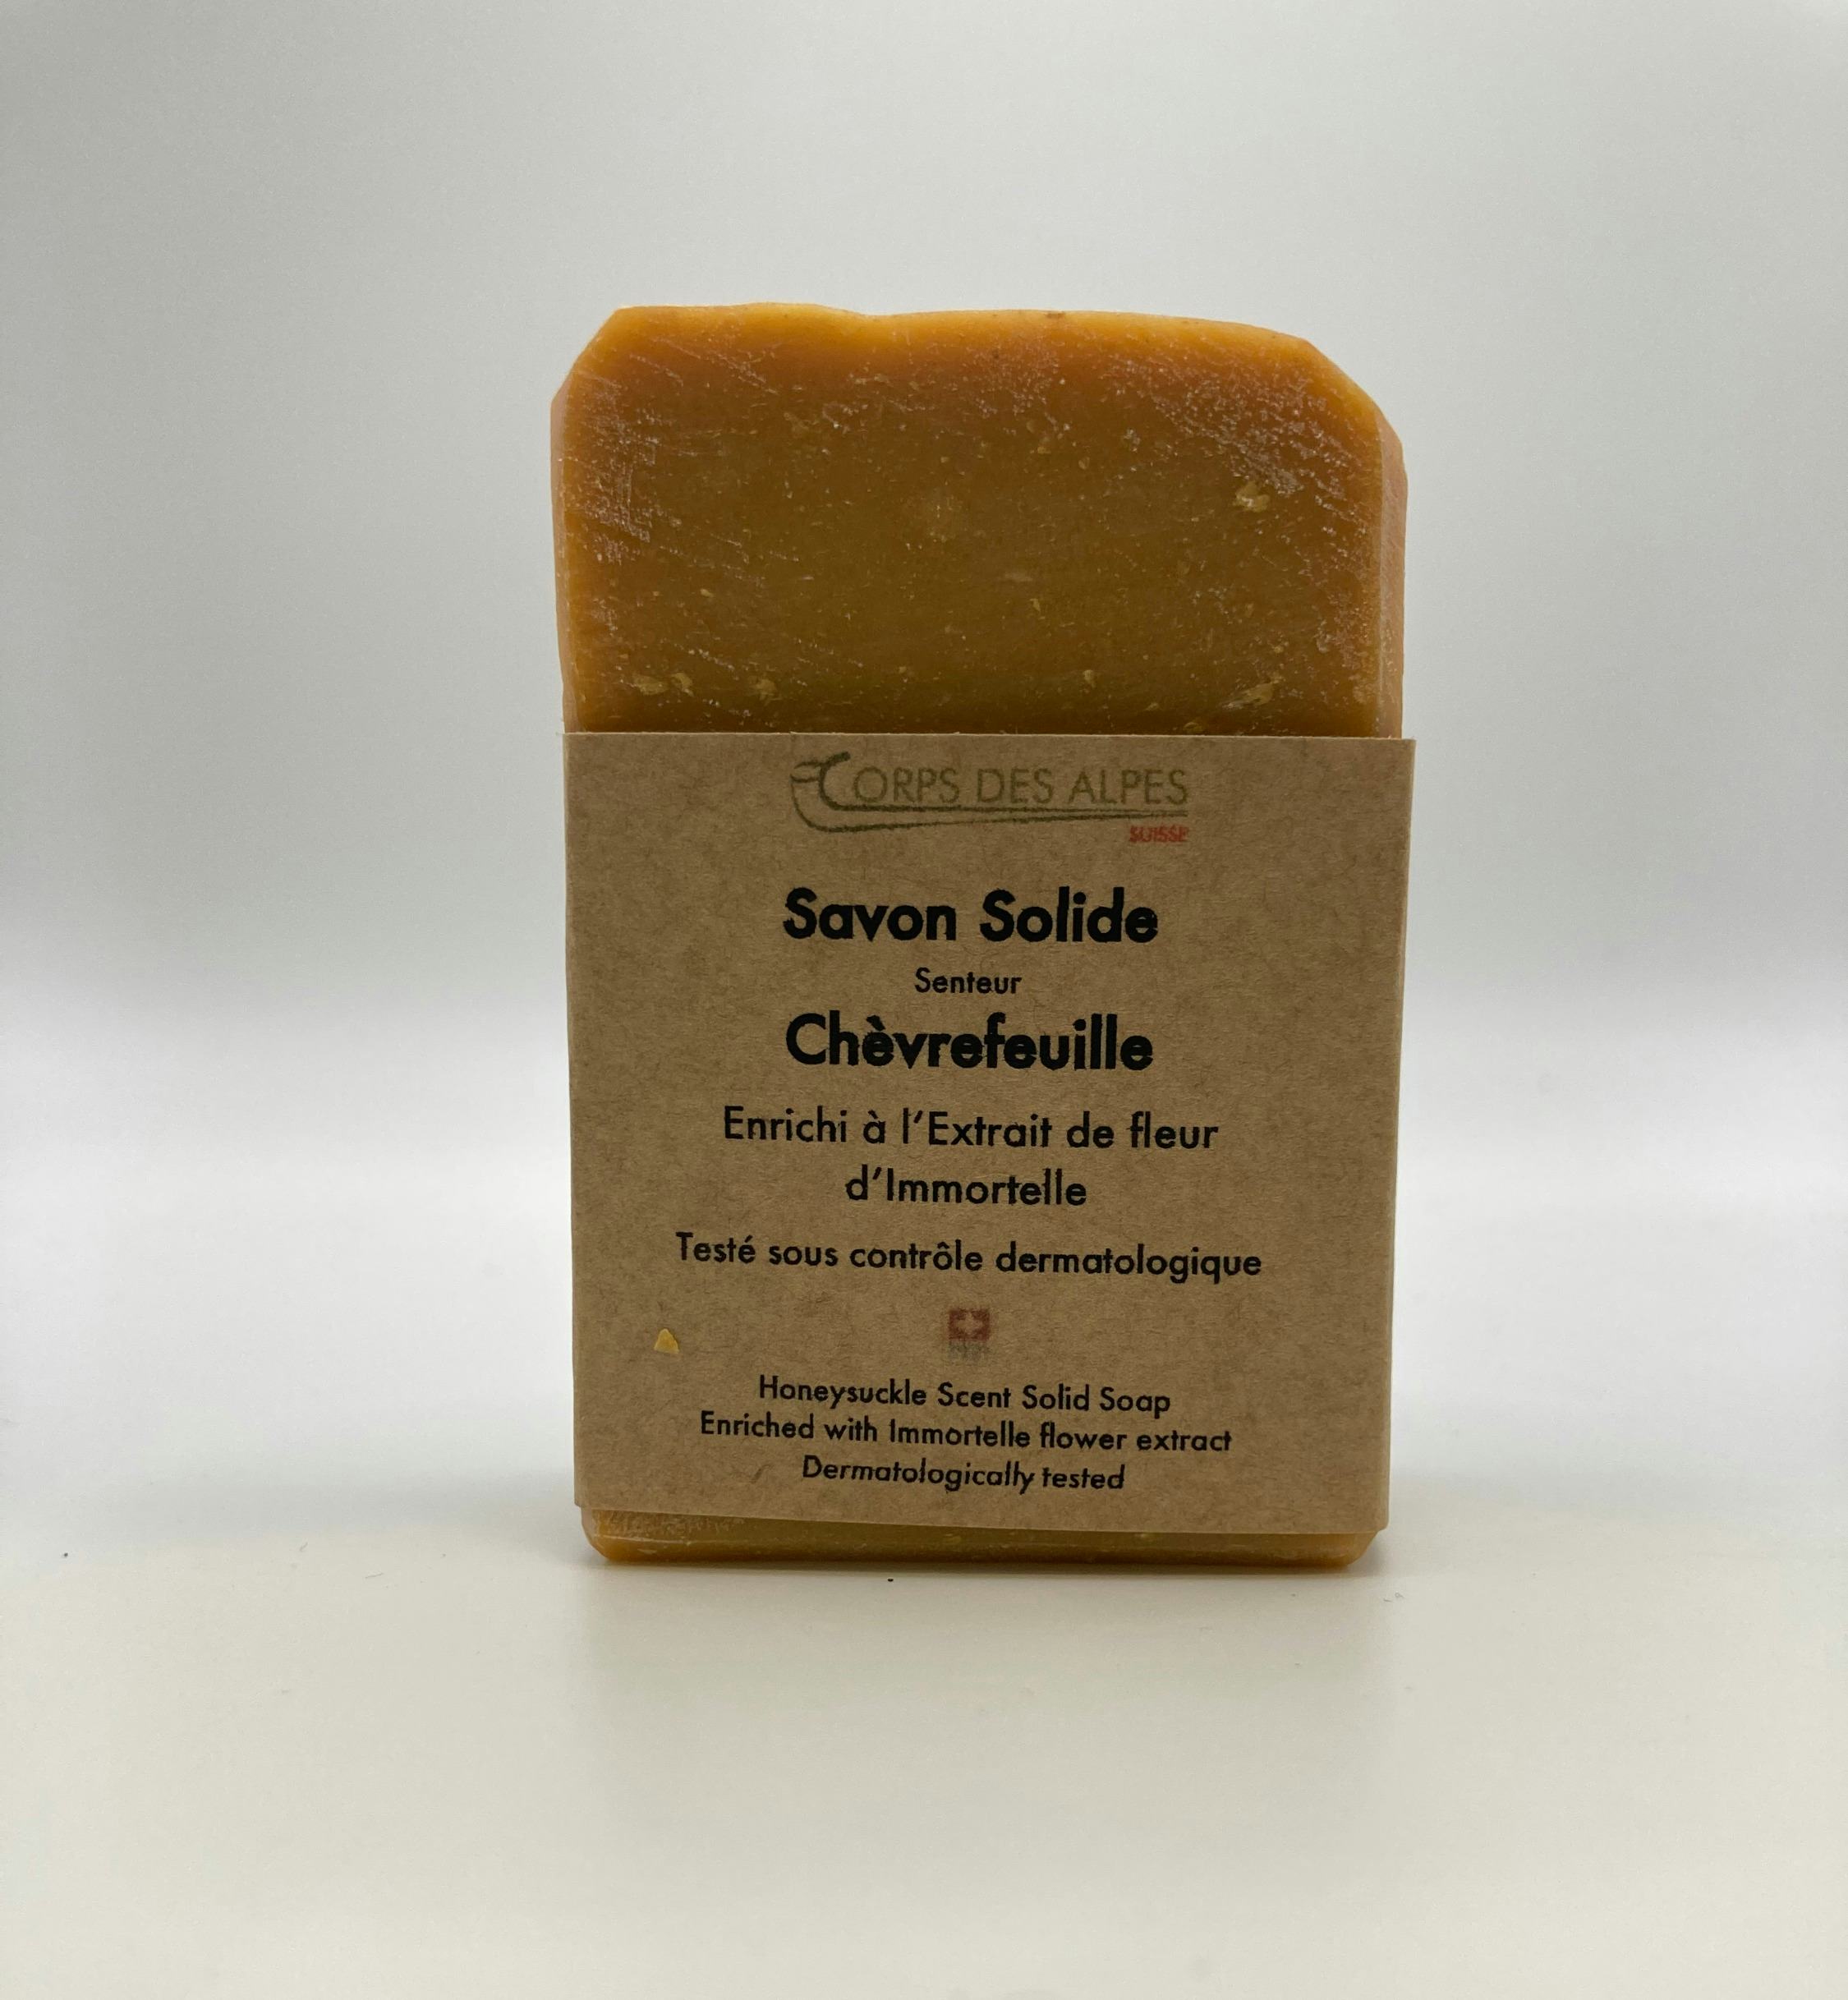 Savon Solide senteur Chèvrefeuille, prodotto artigianale per la vendita diretta in Svizzera